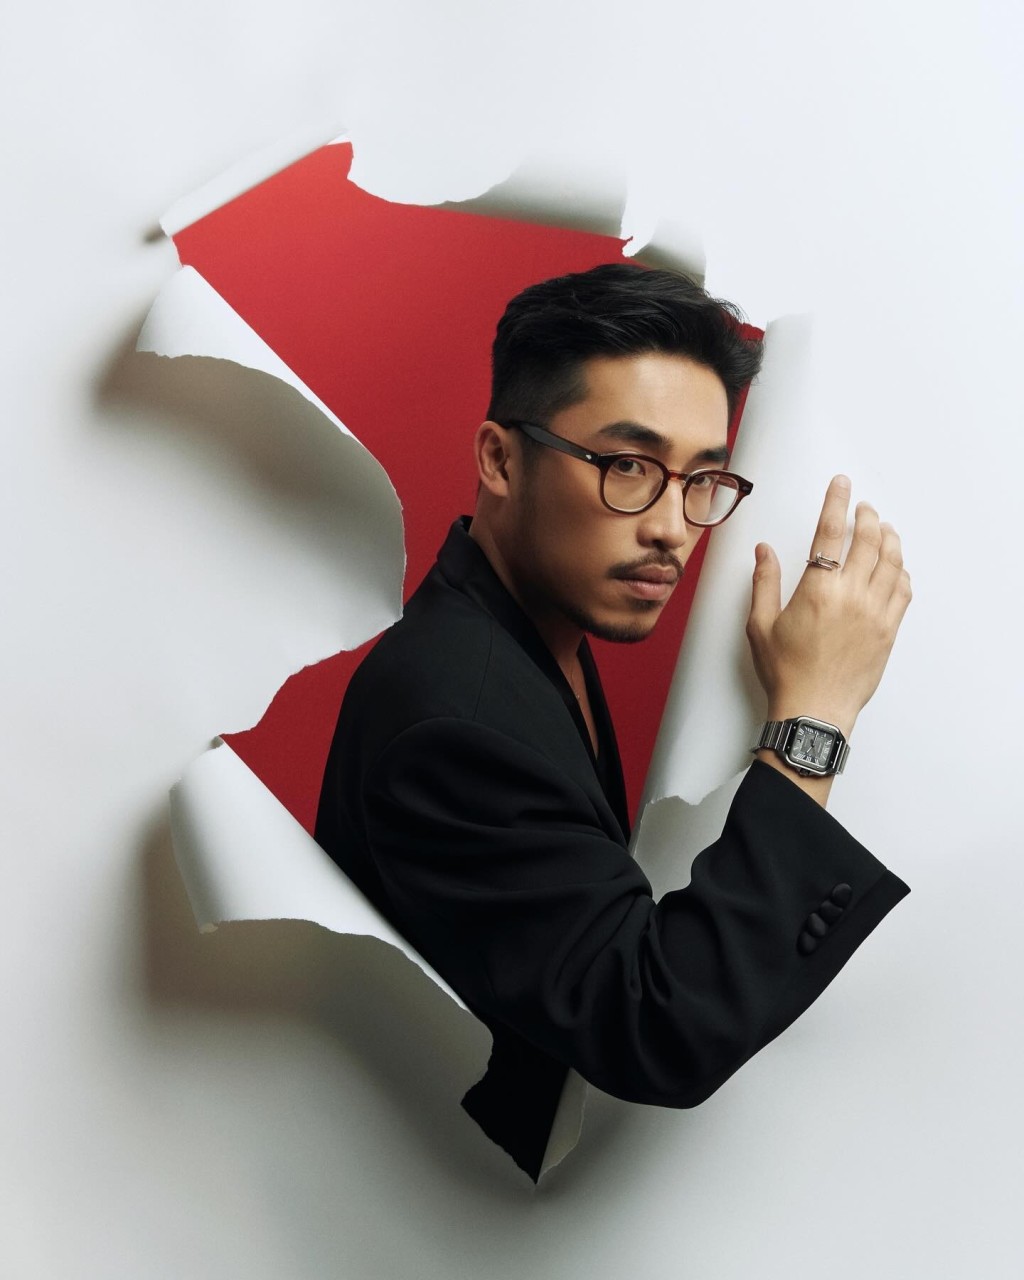 2019年Vũ签约华纳旗下，更是华纳首位越南歌手，随后Vũ亦越来越红。